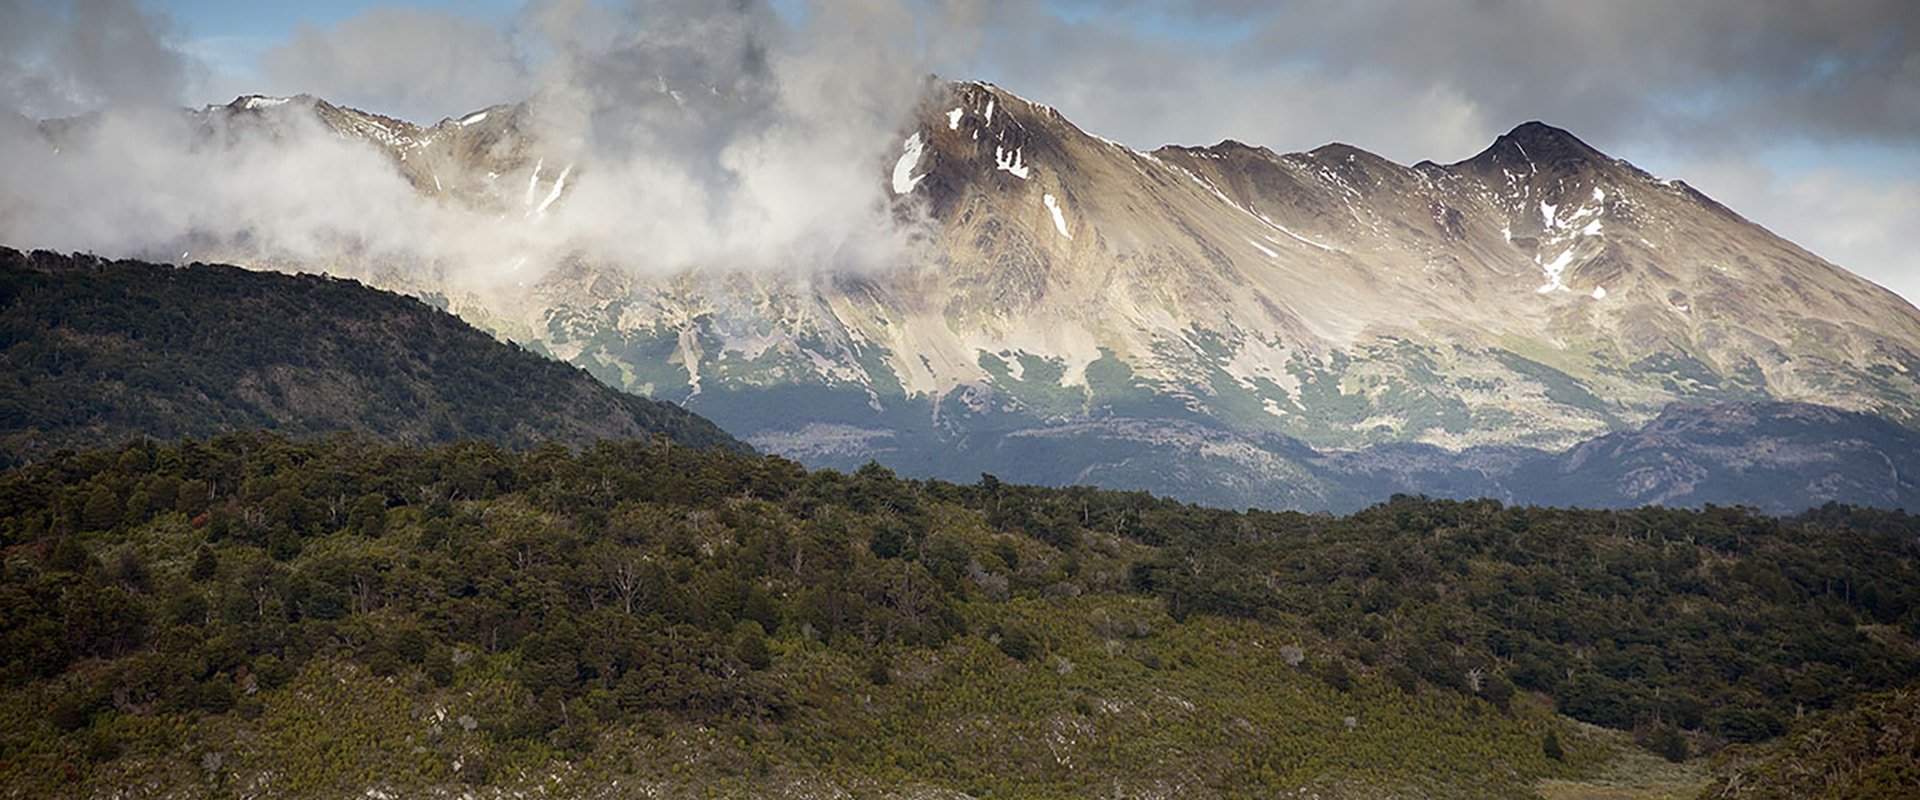 argentine patagonie parc national terre de feu cap horn bout du monde nature sauvage immersion découverte voyage croisière montagne